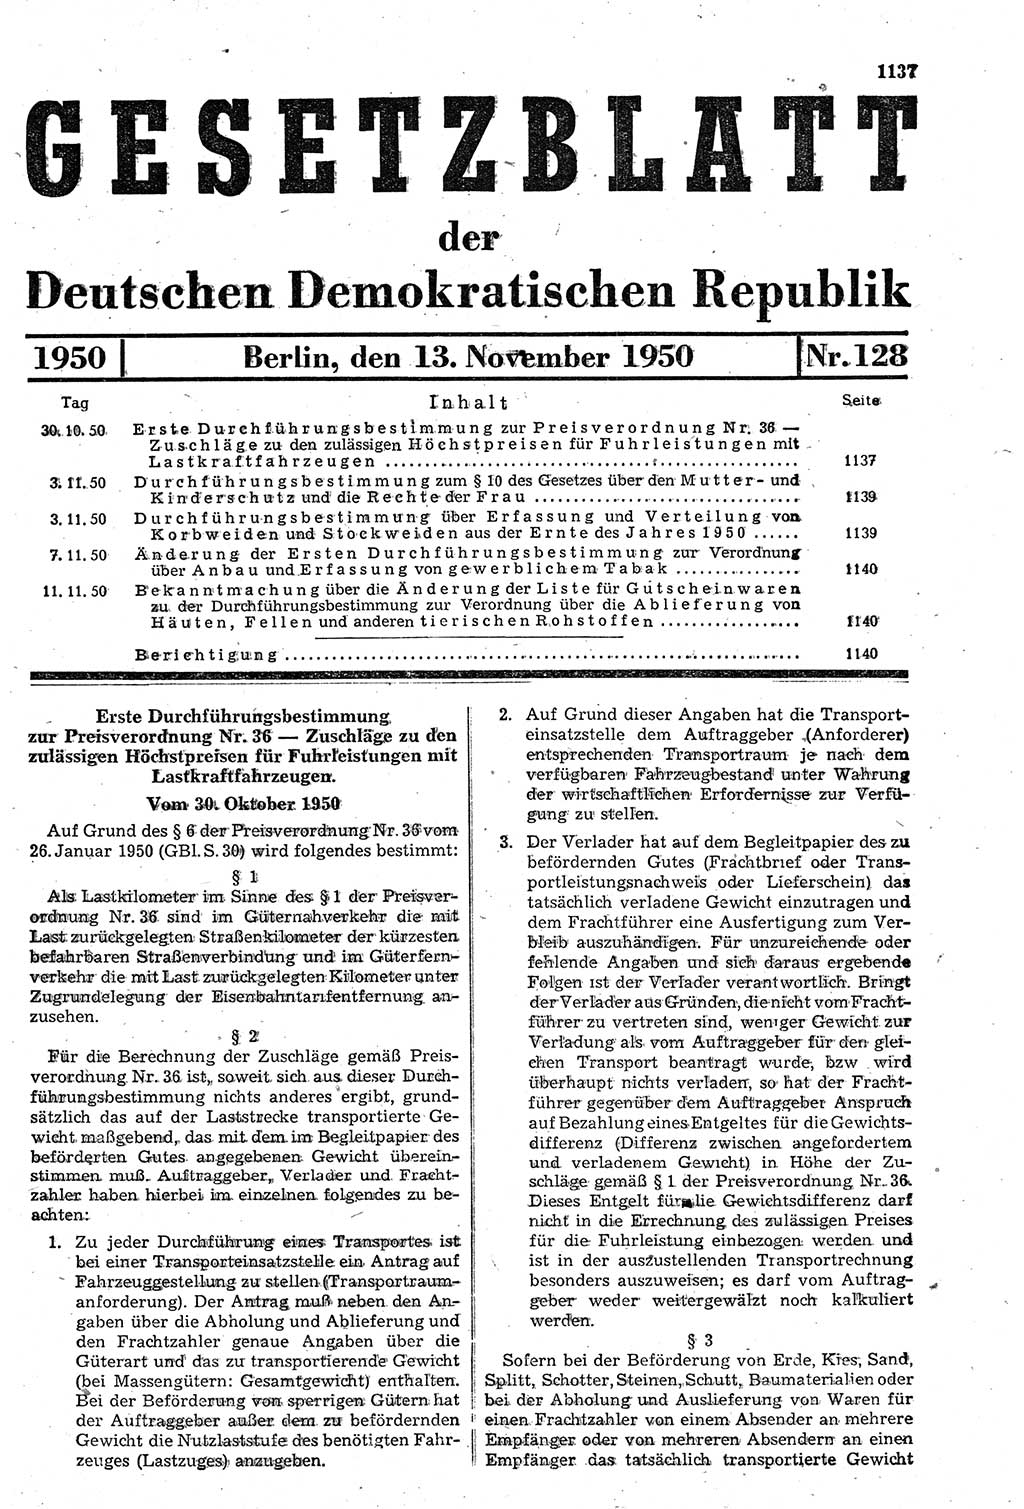 Gesetzblatt (GBl.) der Deutschen Demokratischen Republik (DDR) 1950, Seite 1137 (GBl. DDR 1950, S. 1137)